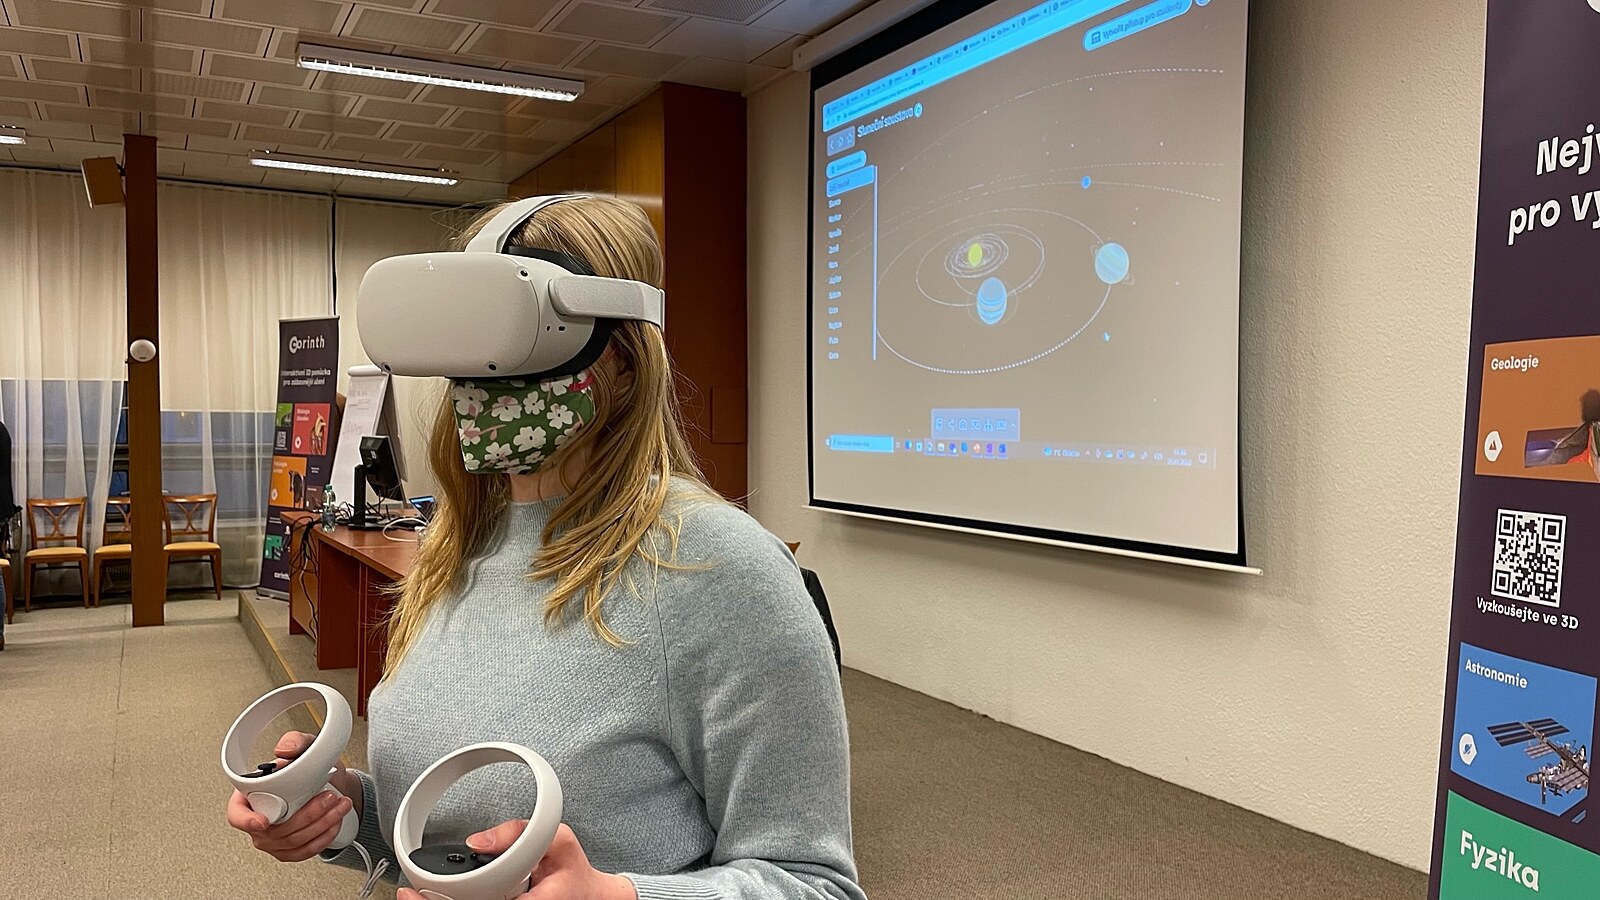 Virtuální realita zpestří výuku, 3D brýle zavedou žáky třeba do jádra buňky  - iDNES.cz